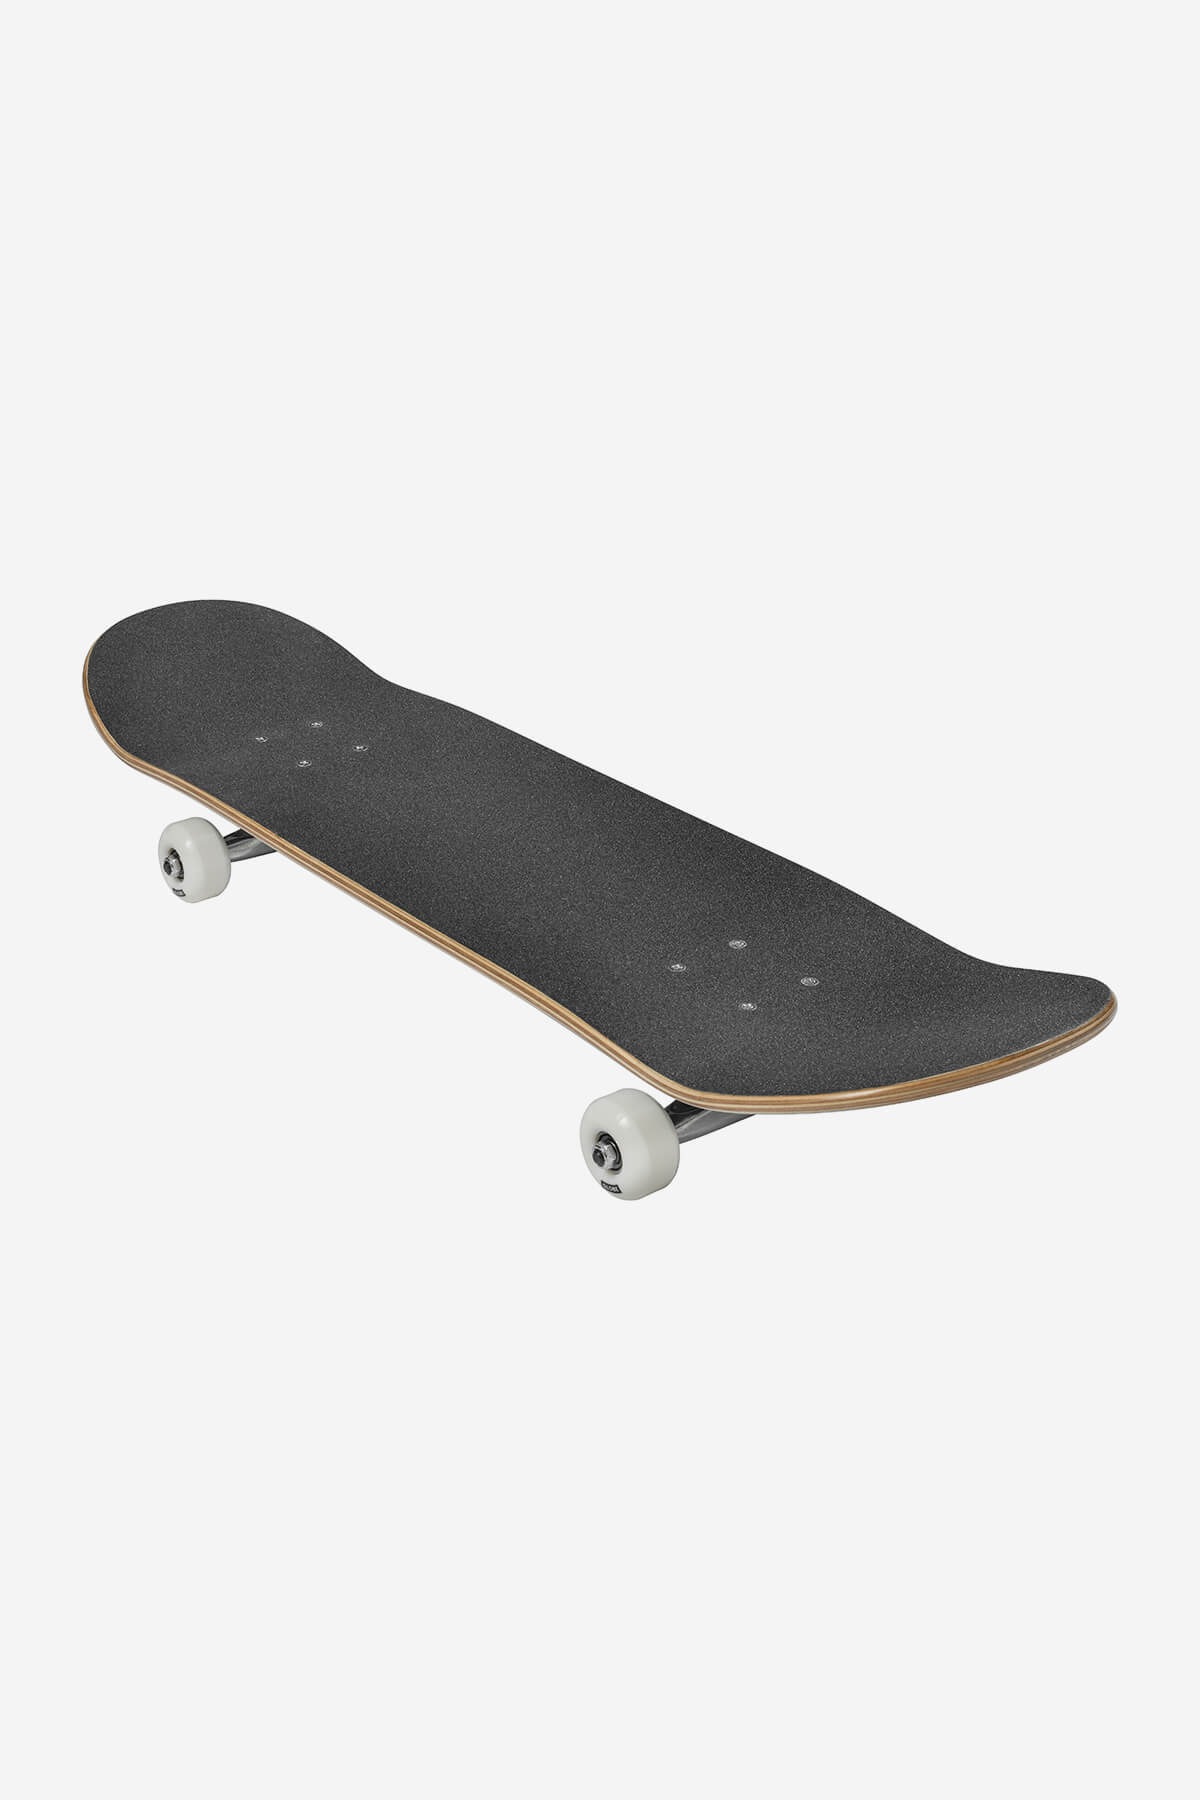 Globe - G0 Fubar - White/Noir - 8.0" complet Skateboard